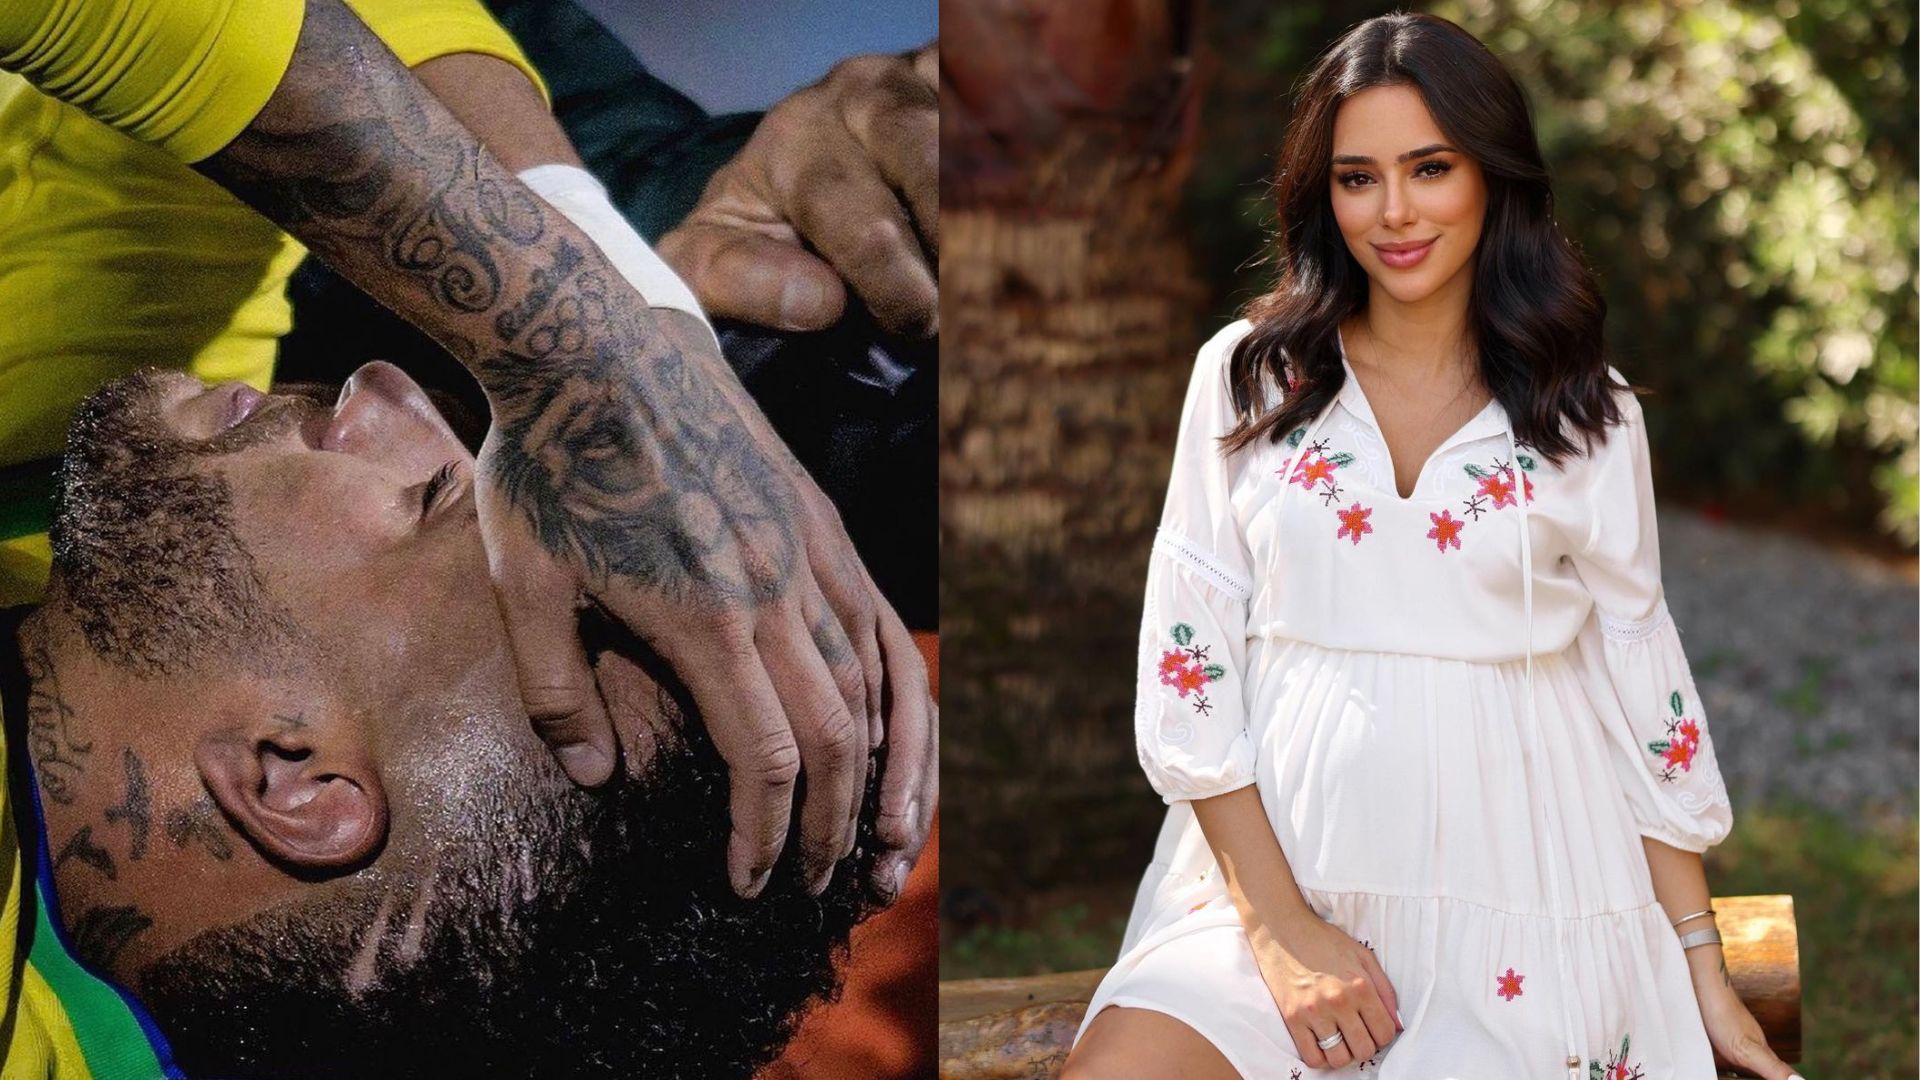 Neymar deitado com camiseta da Seleção Brasileira e as mãos na cabeça e Bruna Biancardi posando de vestido branco com flores vermelhas estampadas na roupa